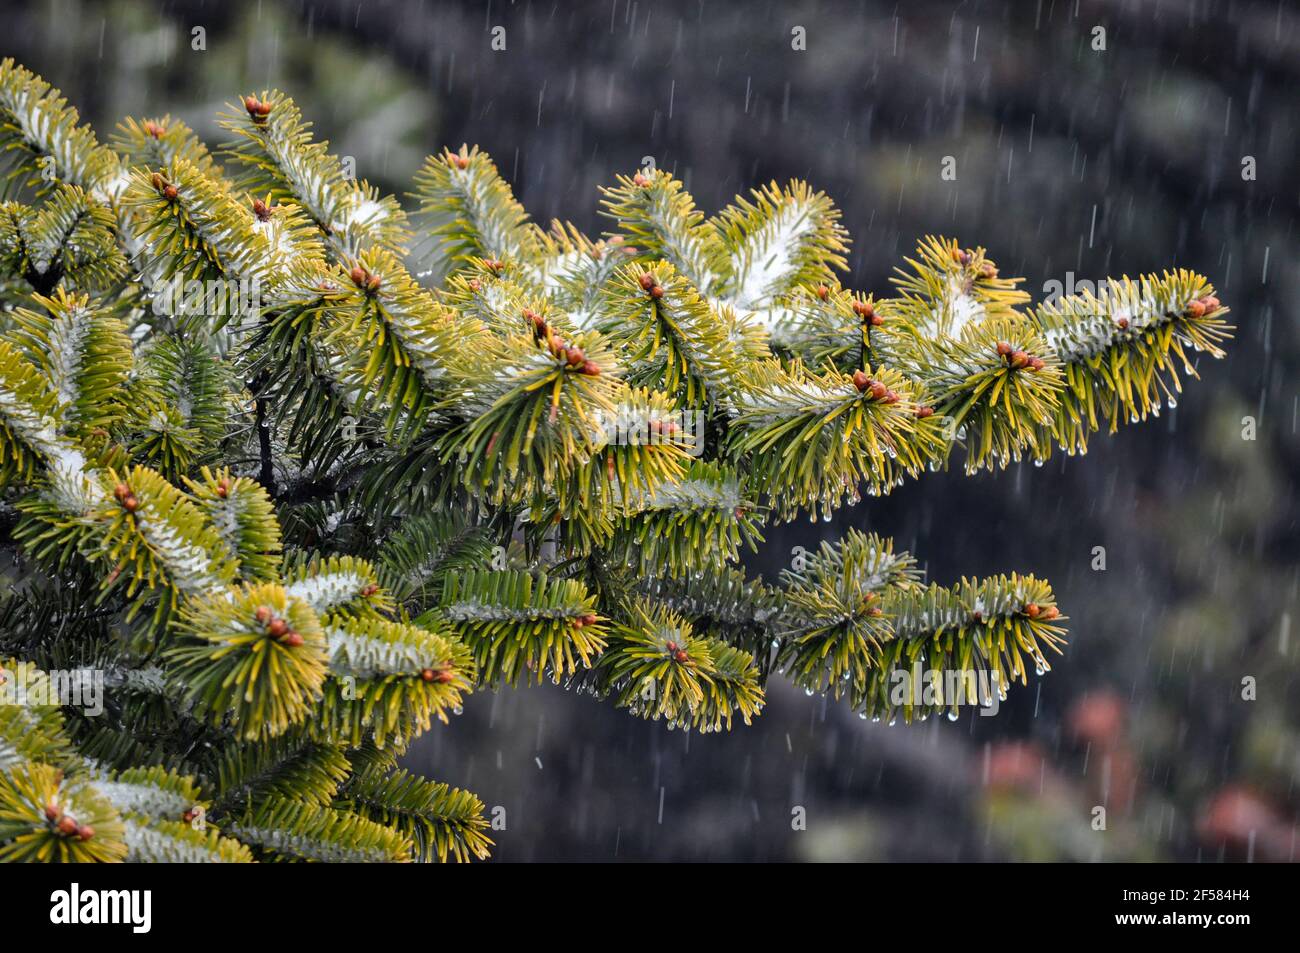 Foglie verdi dell'albero di natale e frutta di colore arancio ricoperta di neve cristallina Foto Stock